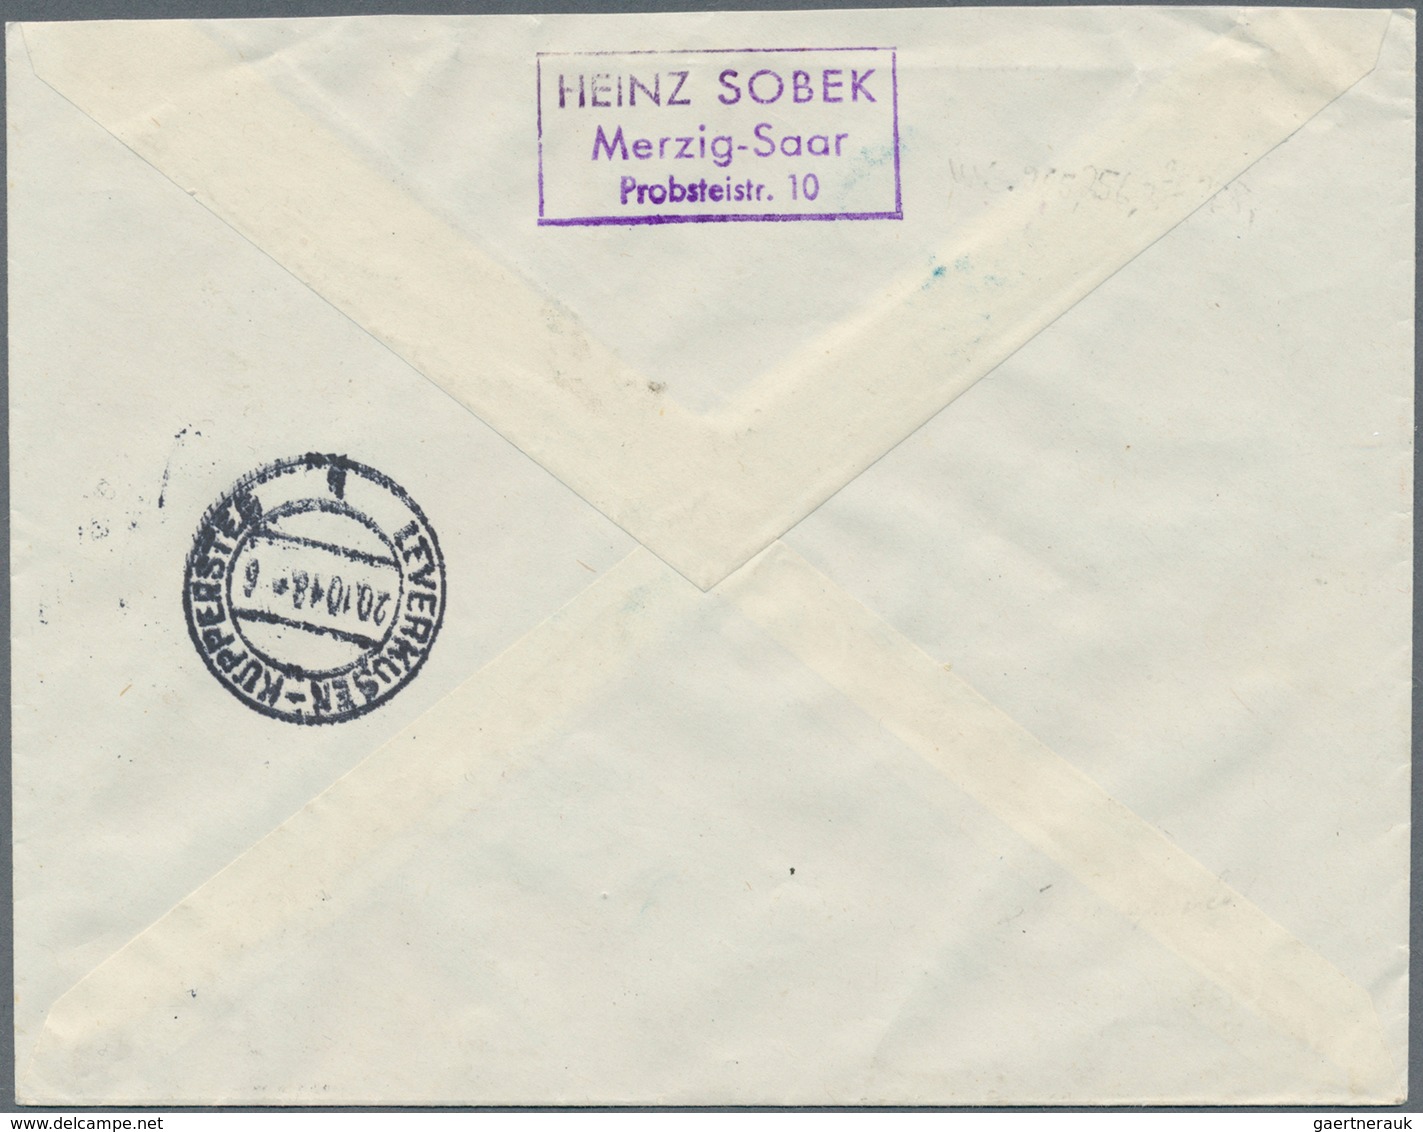 Saarland (1947/56): 1948, HOCHWASSERHILFE, Satzbrief mit Kurzbefund Ney VPP, sowie zwei Einschreiben